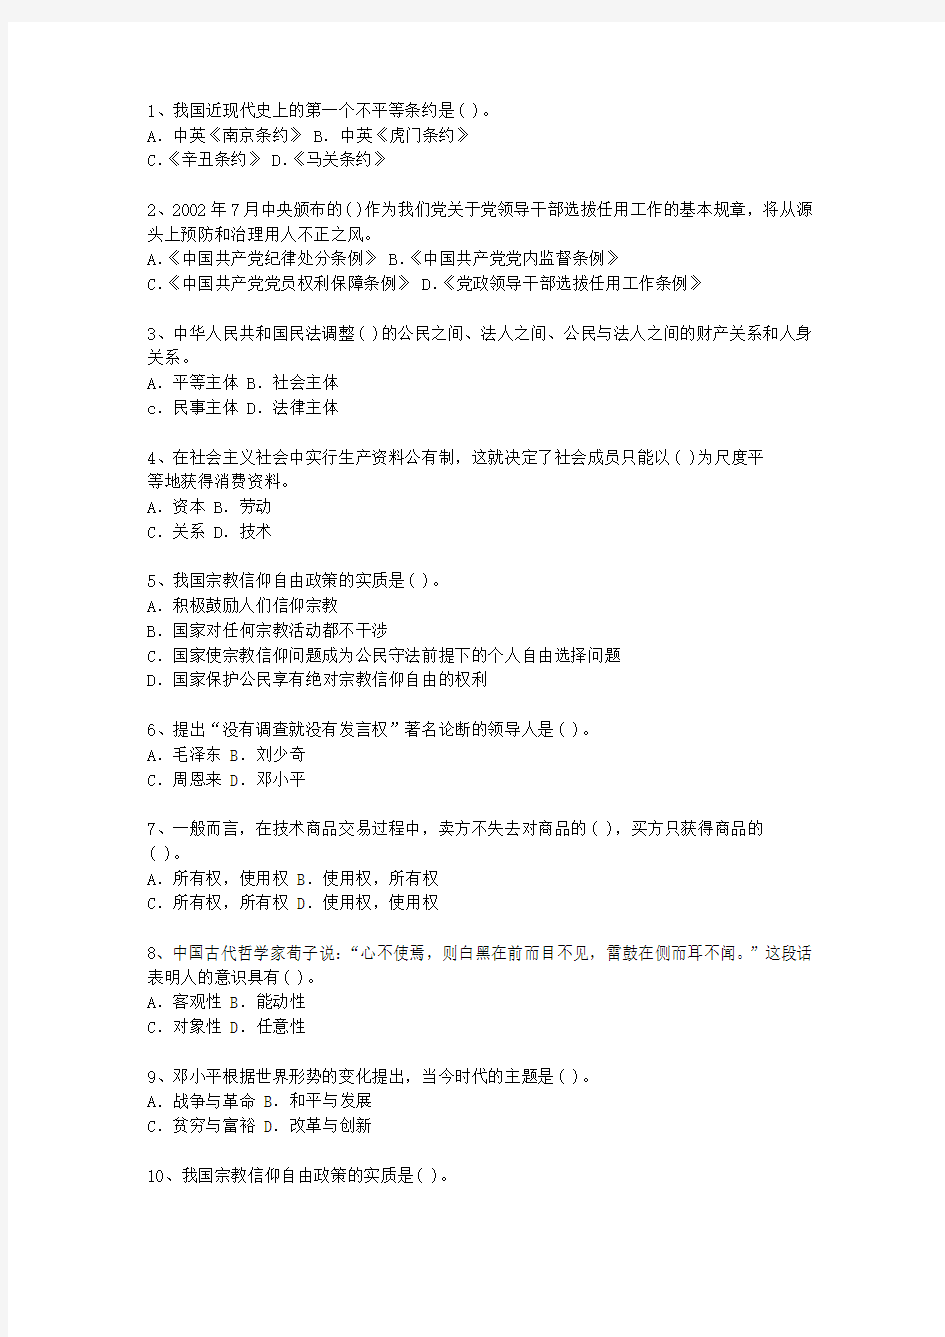 2013陕西省公开选拔党政副科级领导干部公共科目考试技巧、答题原则